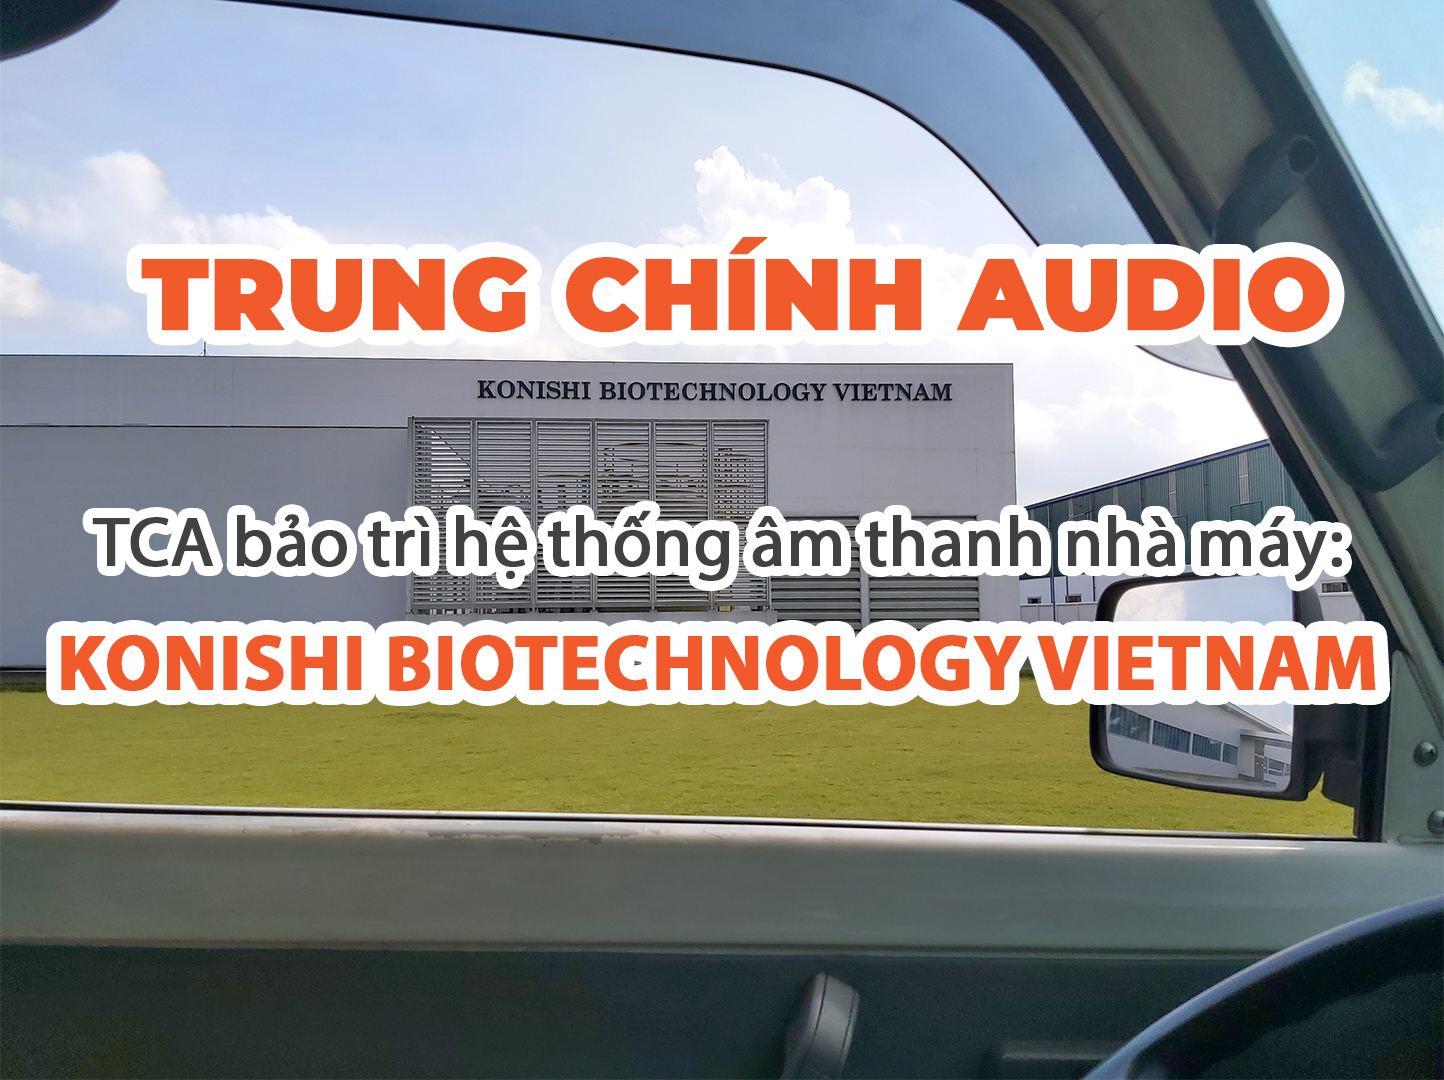 TCA bảo trì hệ thống âm thanh nhà máy: KONISHI BIOTECHLOGY VIETNAM